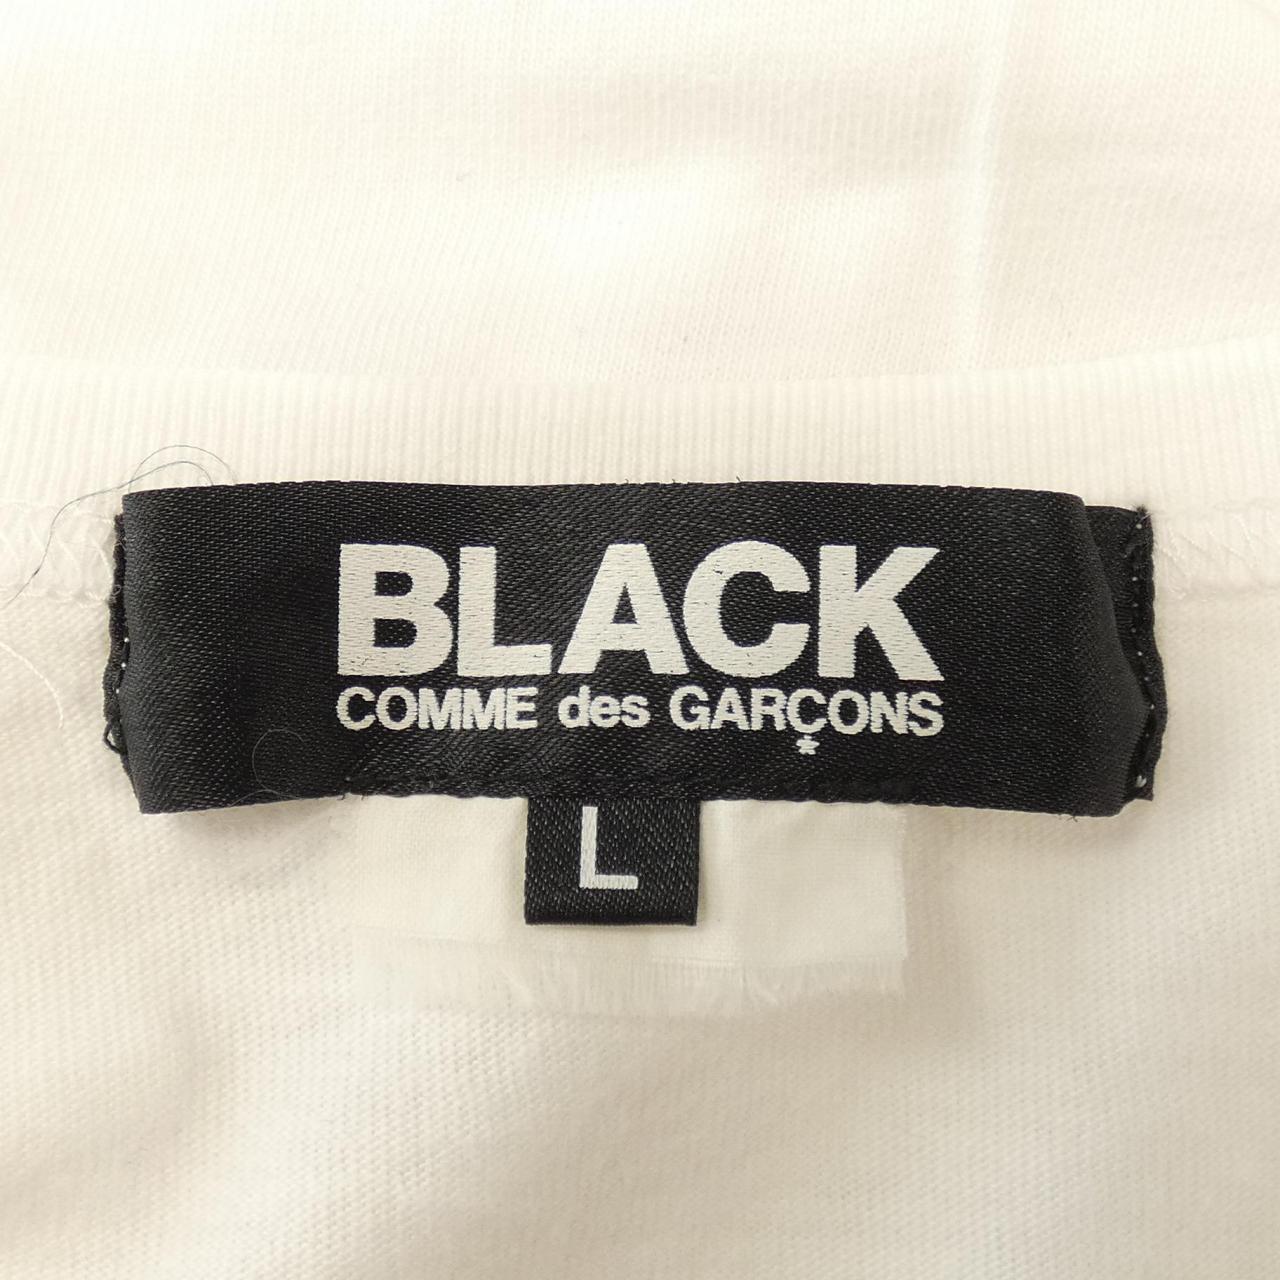 黑色打底衫BLACKGARCON'S上衣